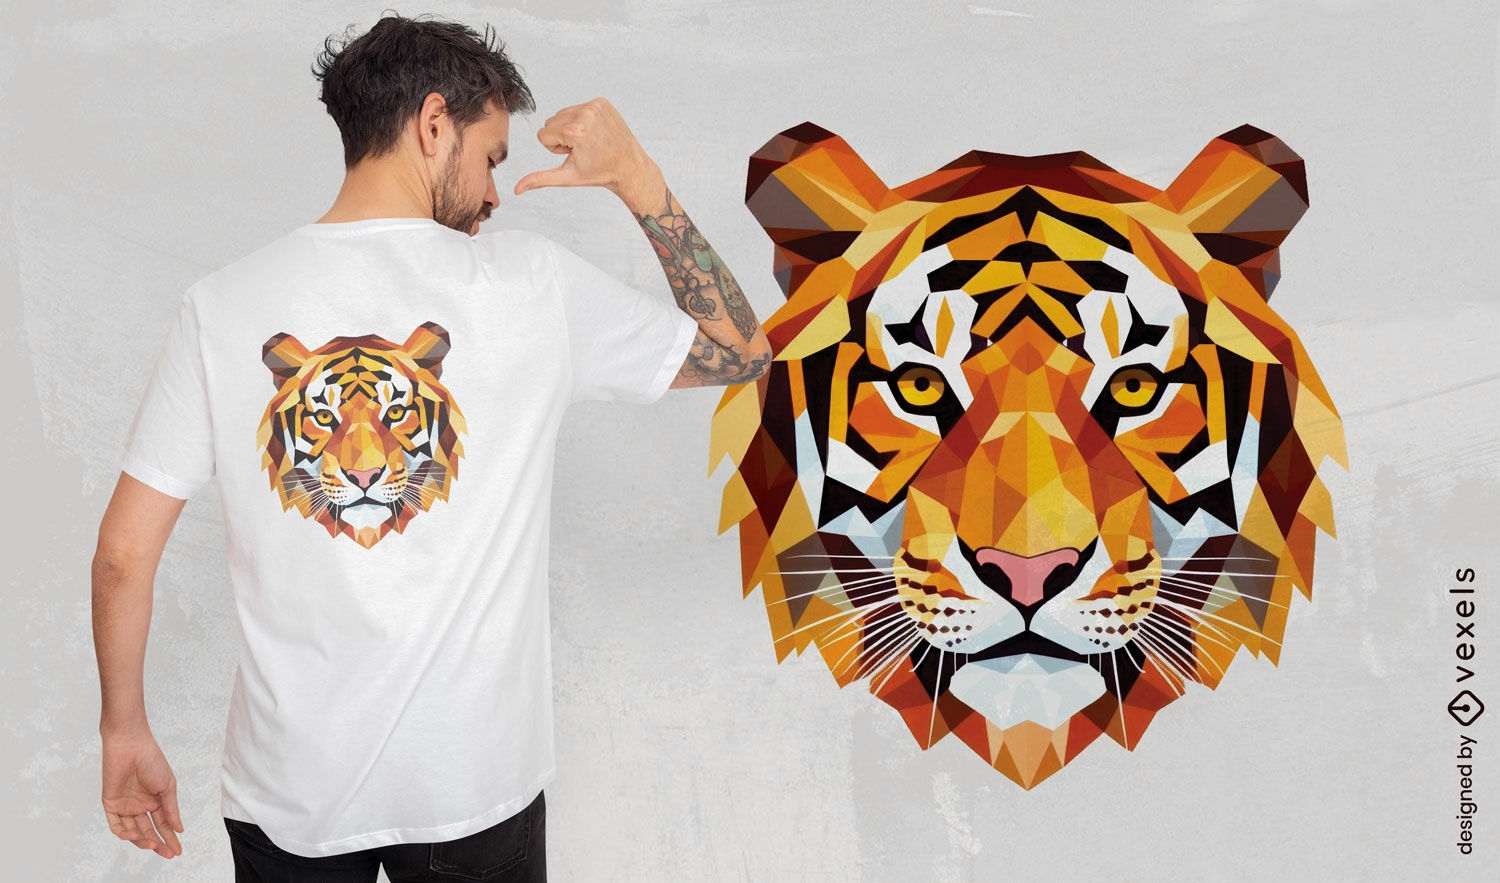 Dise?o de camiseta con cara de tigre geom?trica.